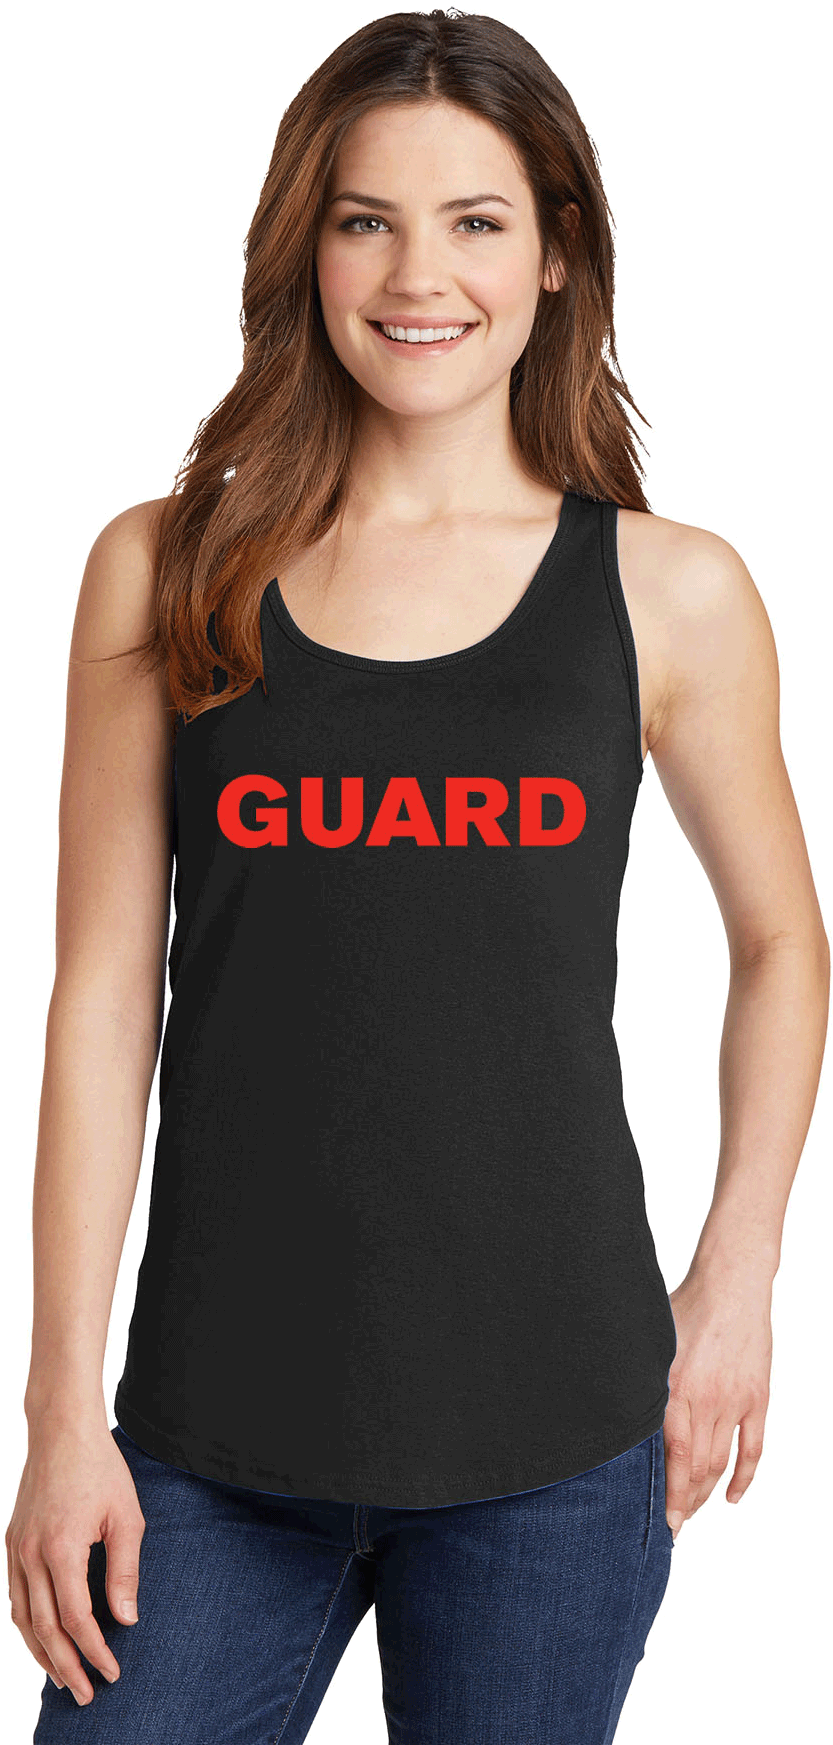 Lifeguard Tank Top Woman PNG image